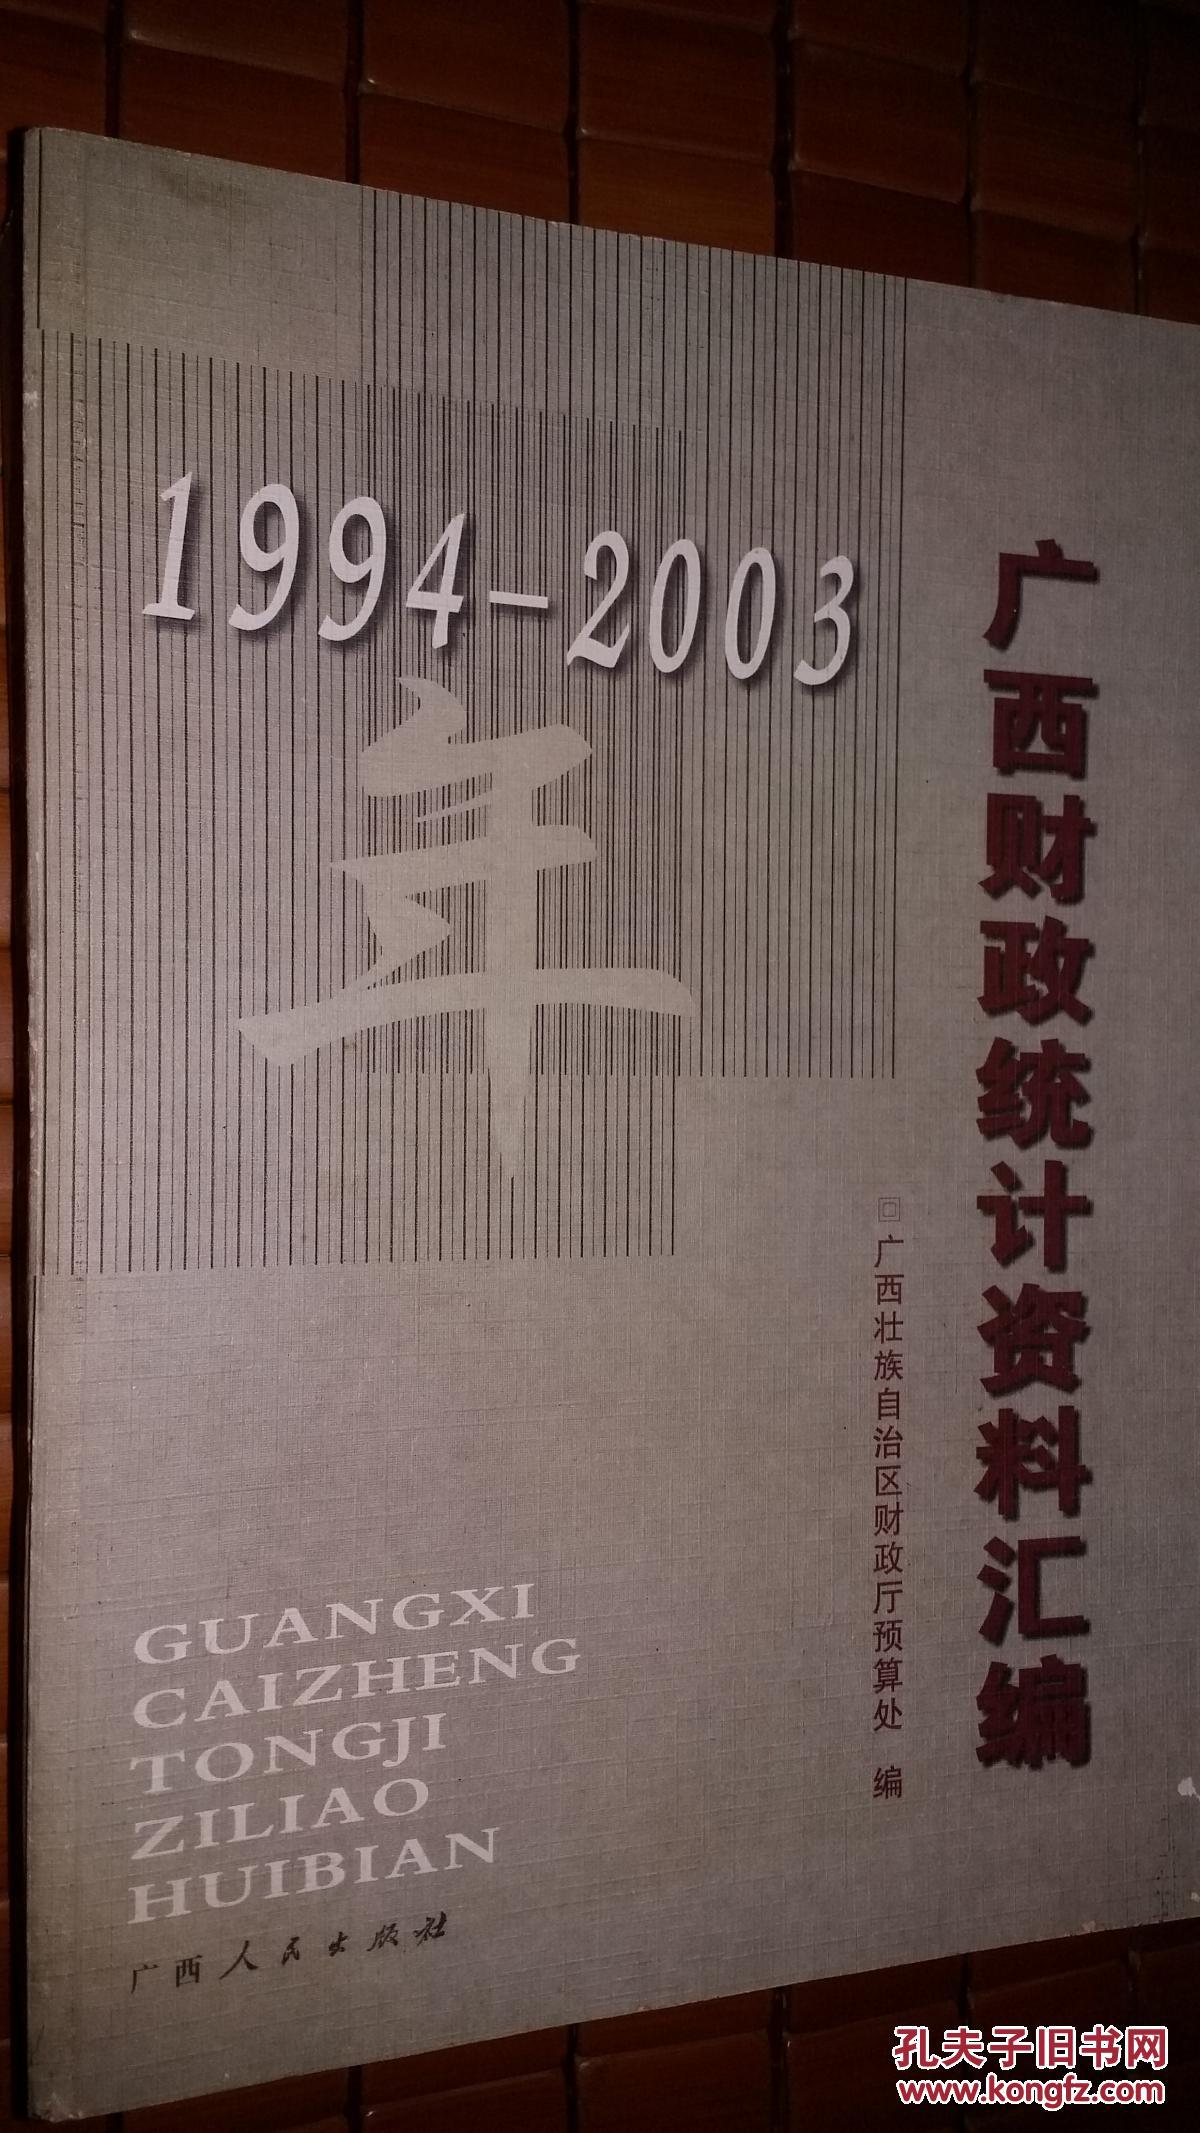 1994—2003年广西财政统计资料汇编 02